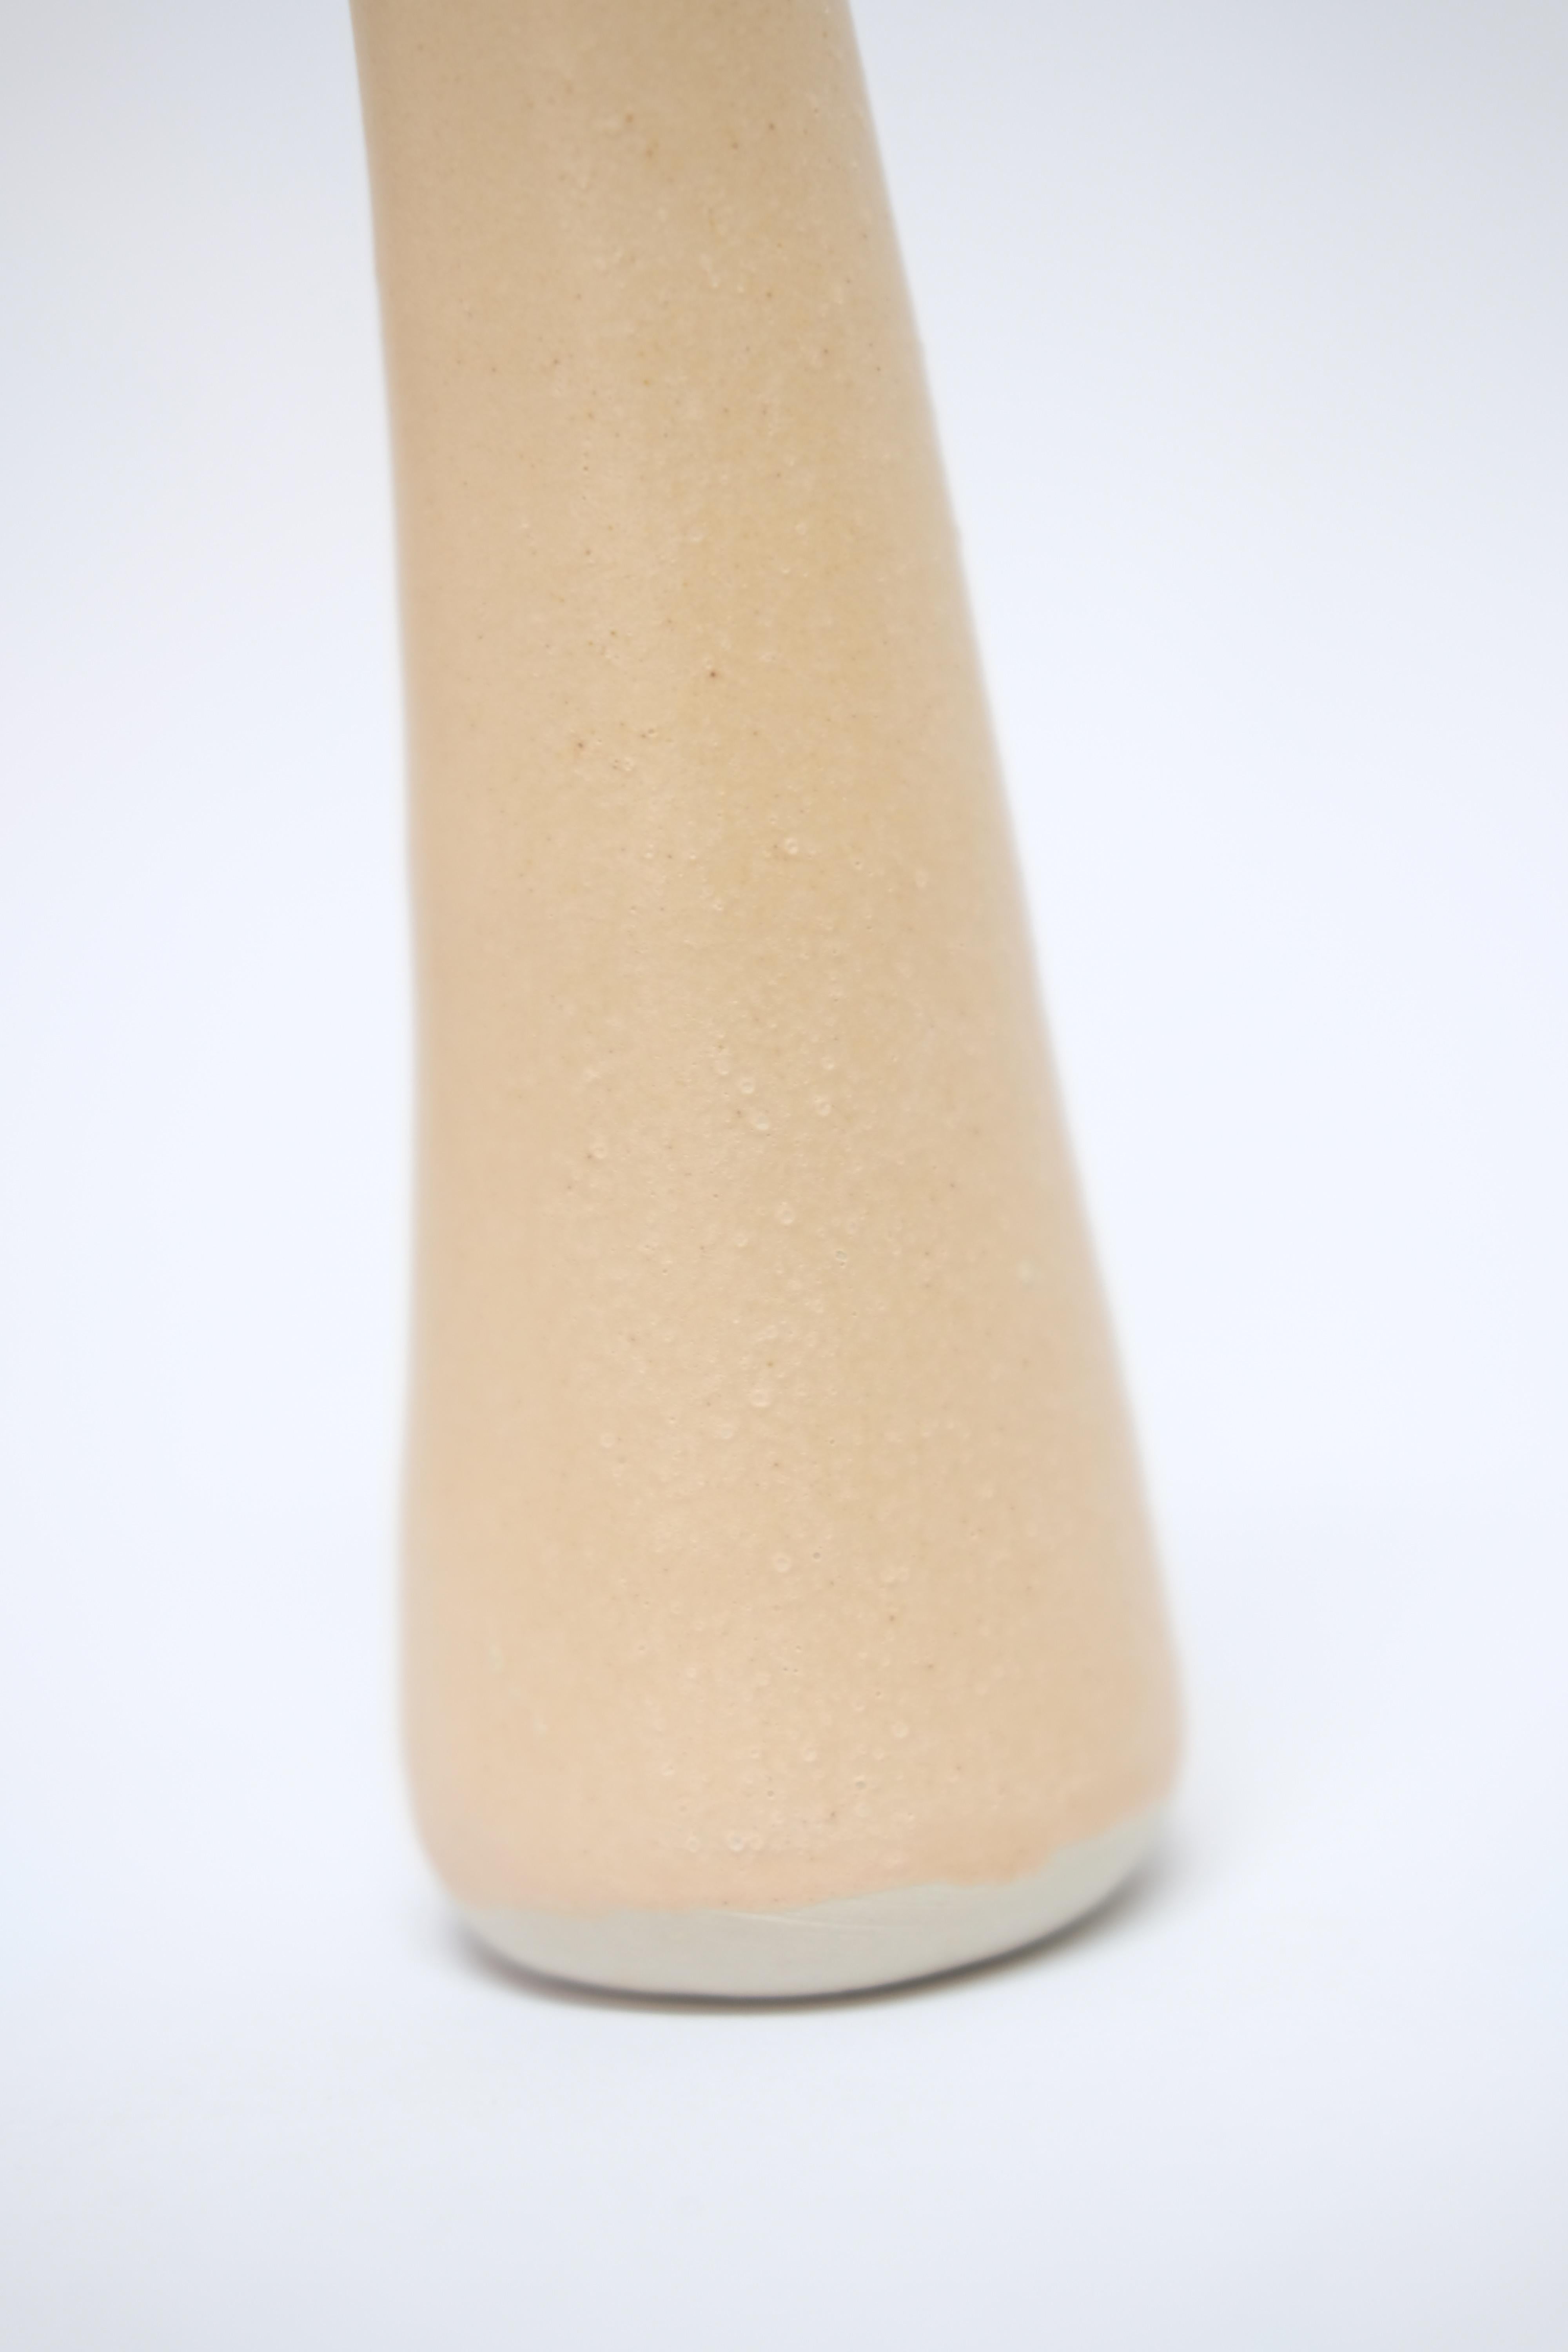 Contemporary Solitario Stoneware Vase by Camila Apaez For Sale